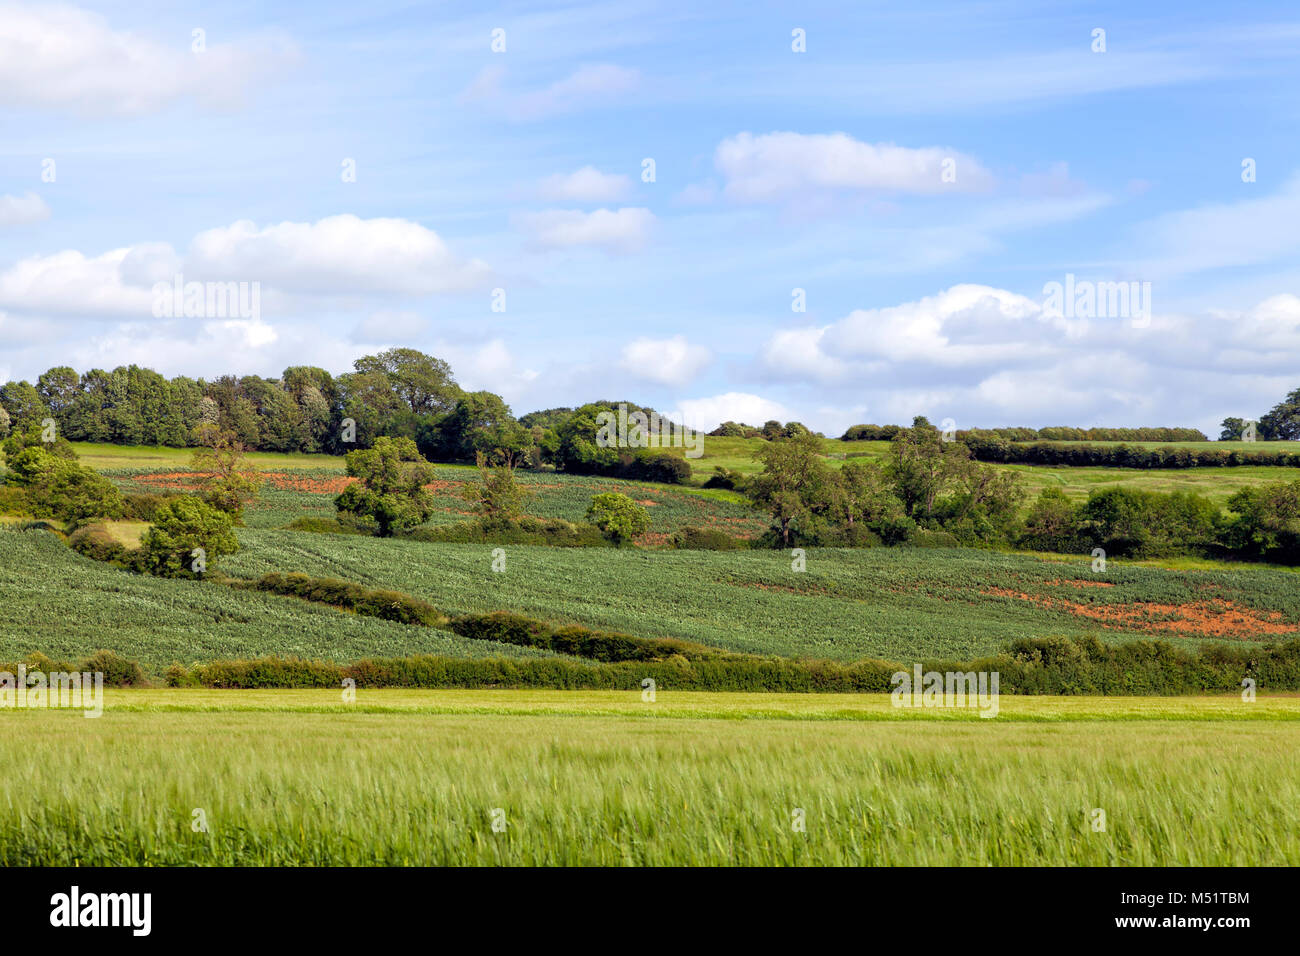 Grüne Weizen Feldern, mit der Überfahrt land Wanderwege, Hecke, Wald auf dem Hügel, in einer englischen Landschaft, an einem sonnigen Sommertag. Stockfoto